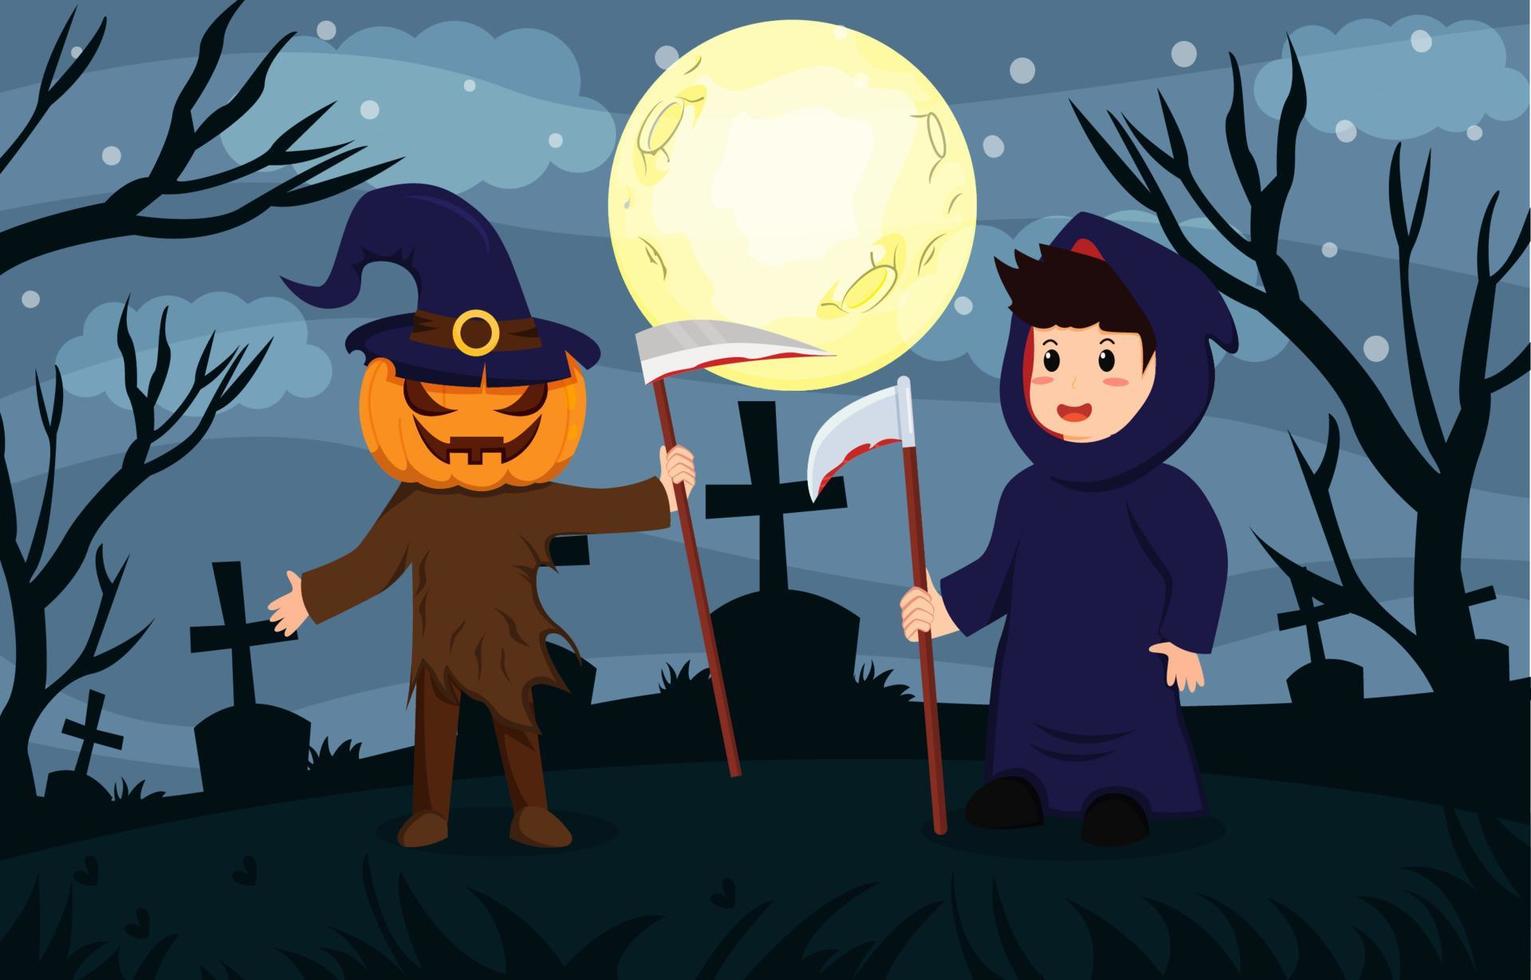 Happy Halloween background design vector with kids in pumpkin and devil Halloween costumes.